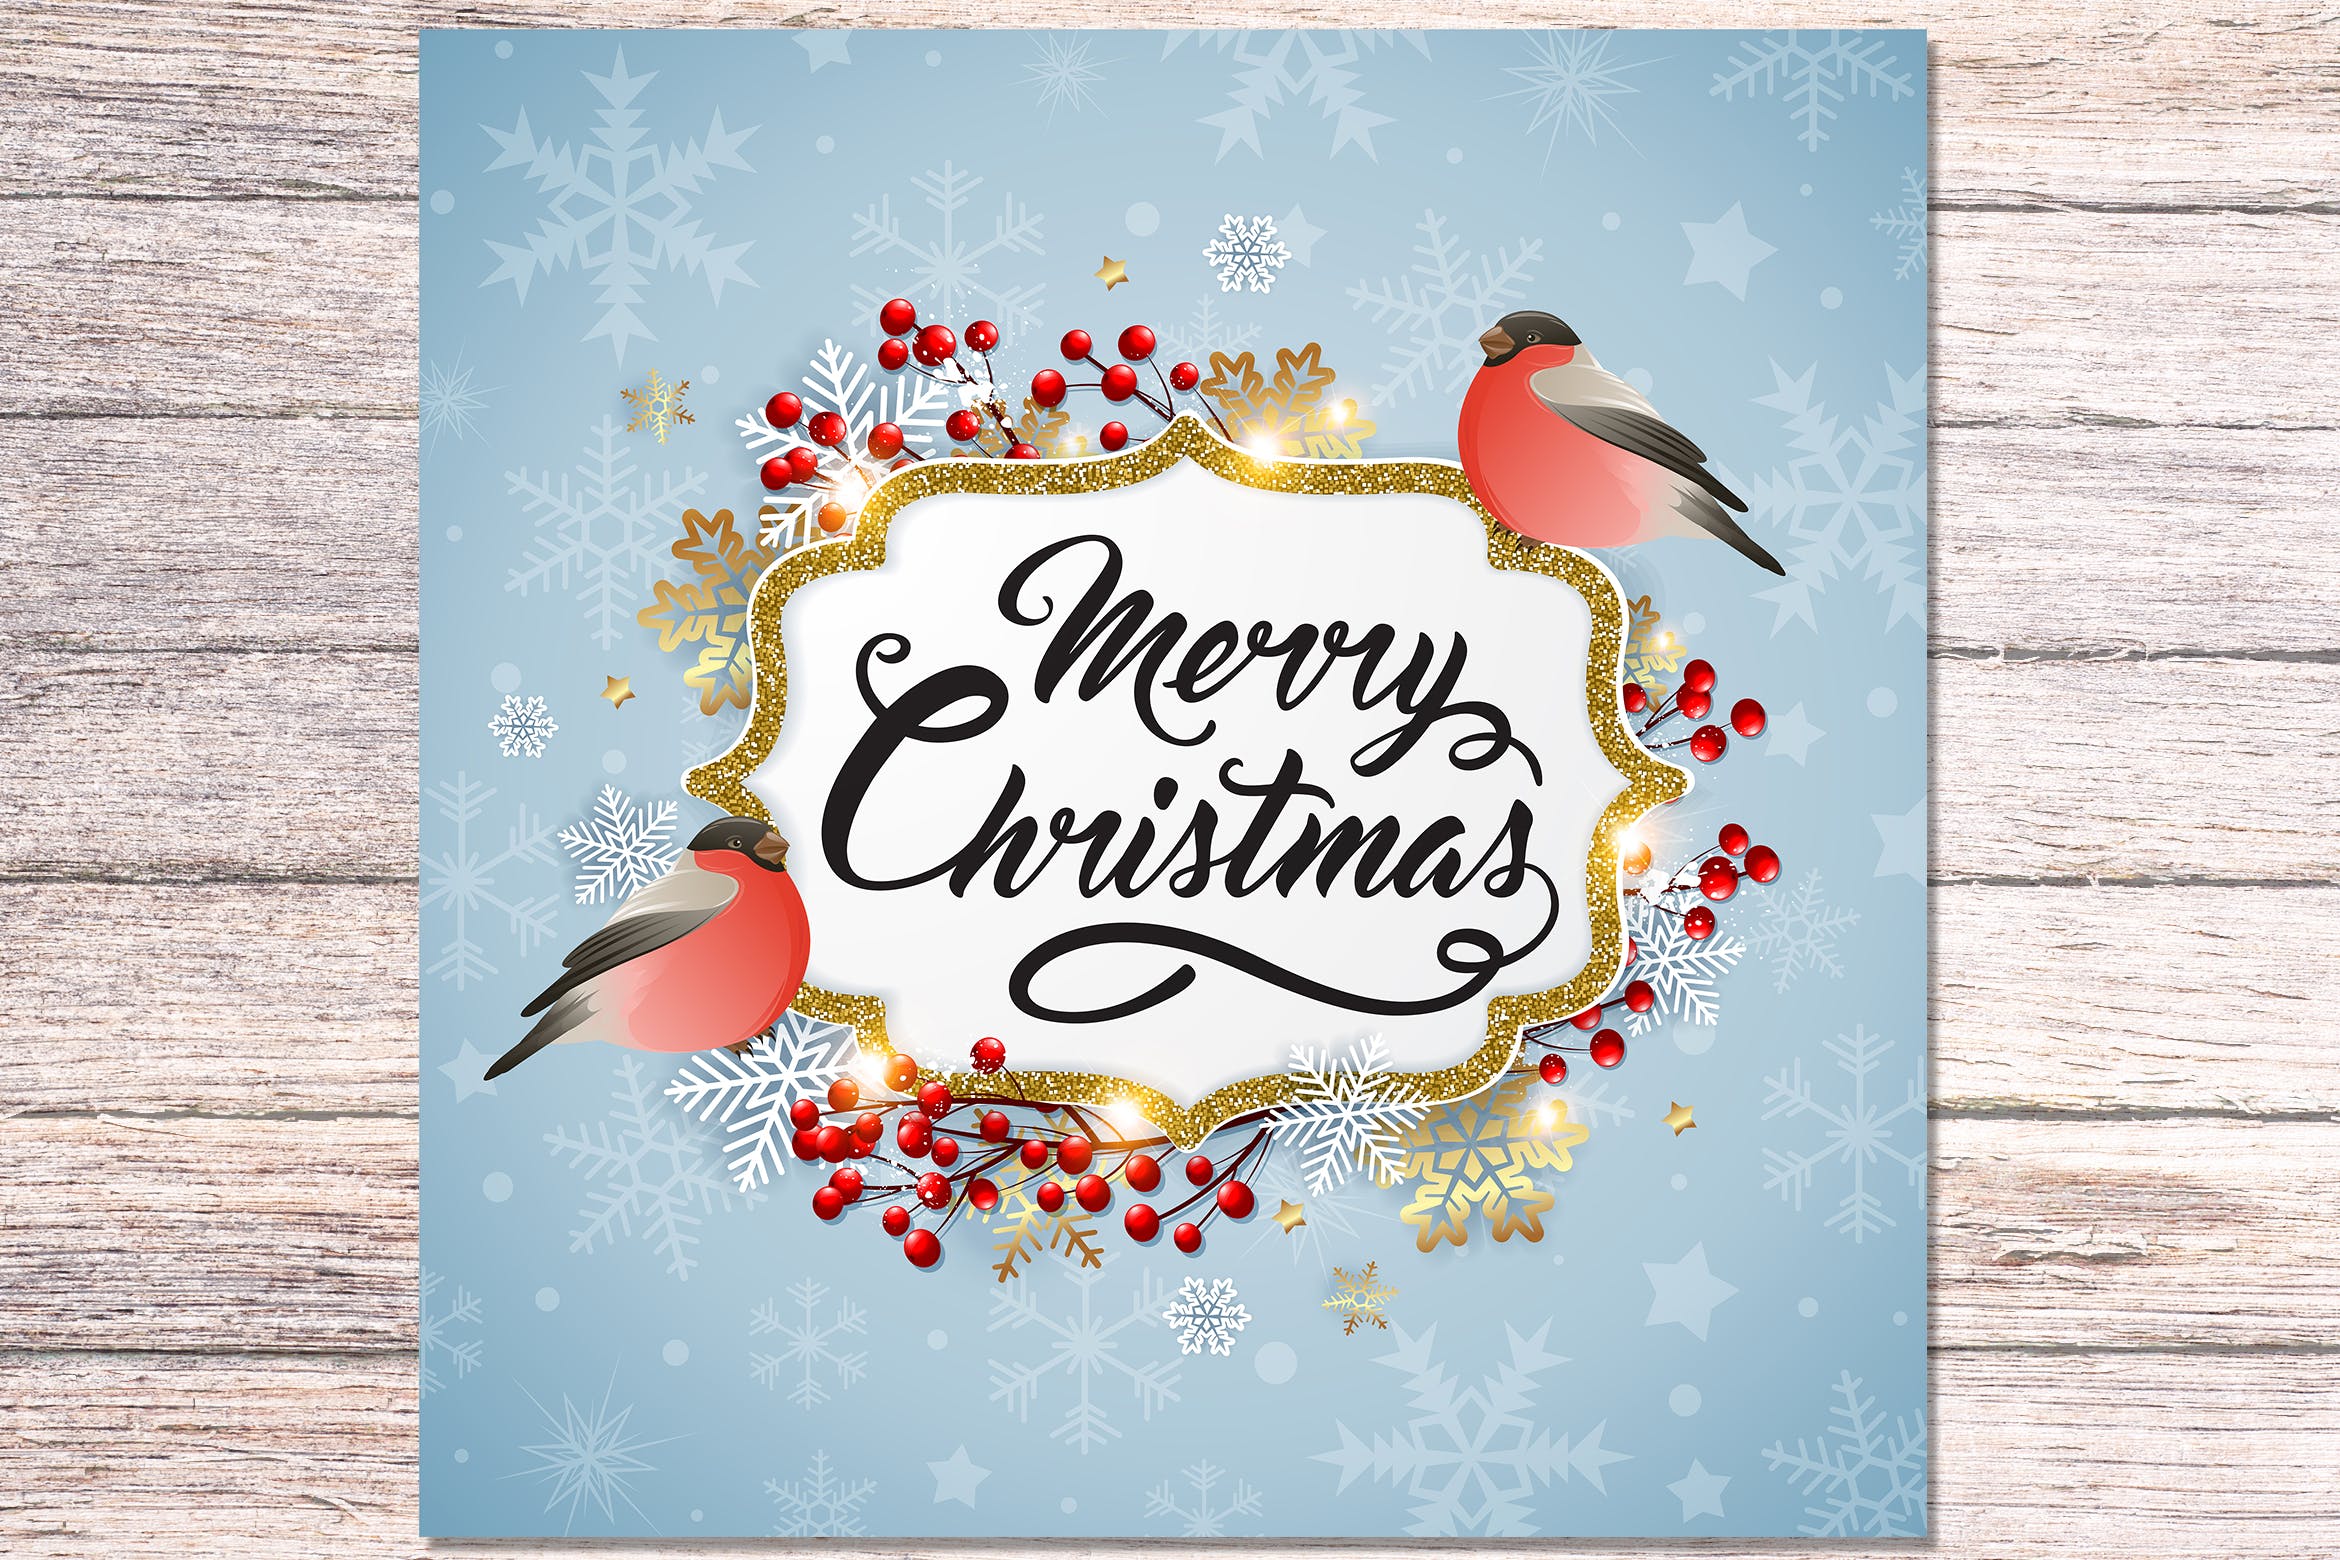 圣诞主题背景设计素材 Christmas Background with Bullfinches插图